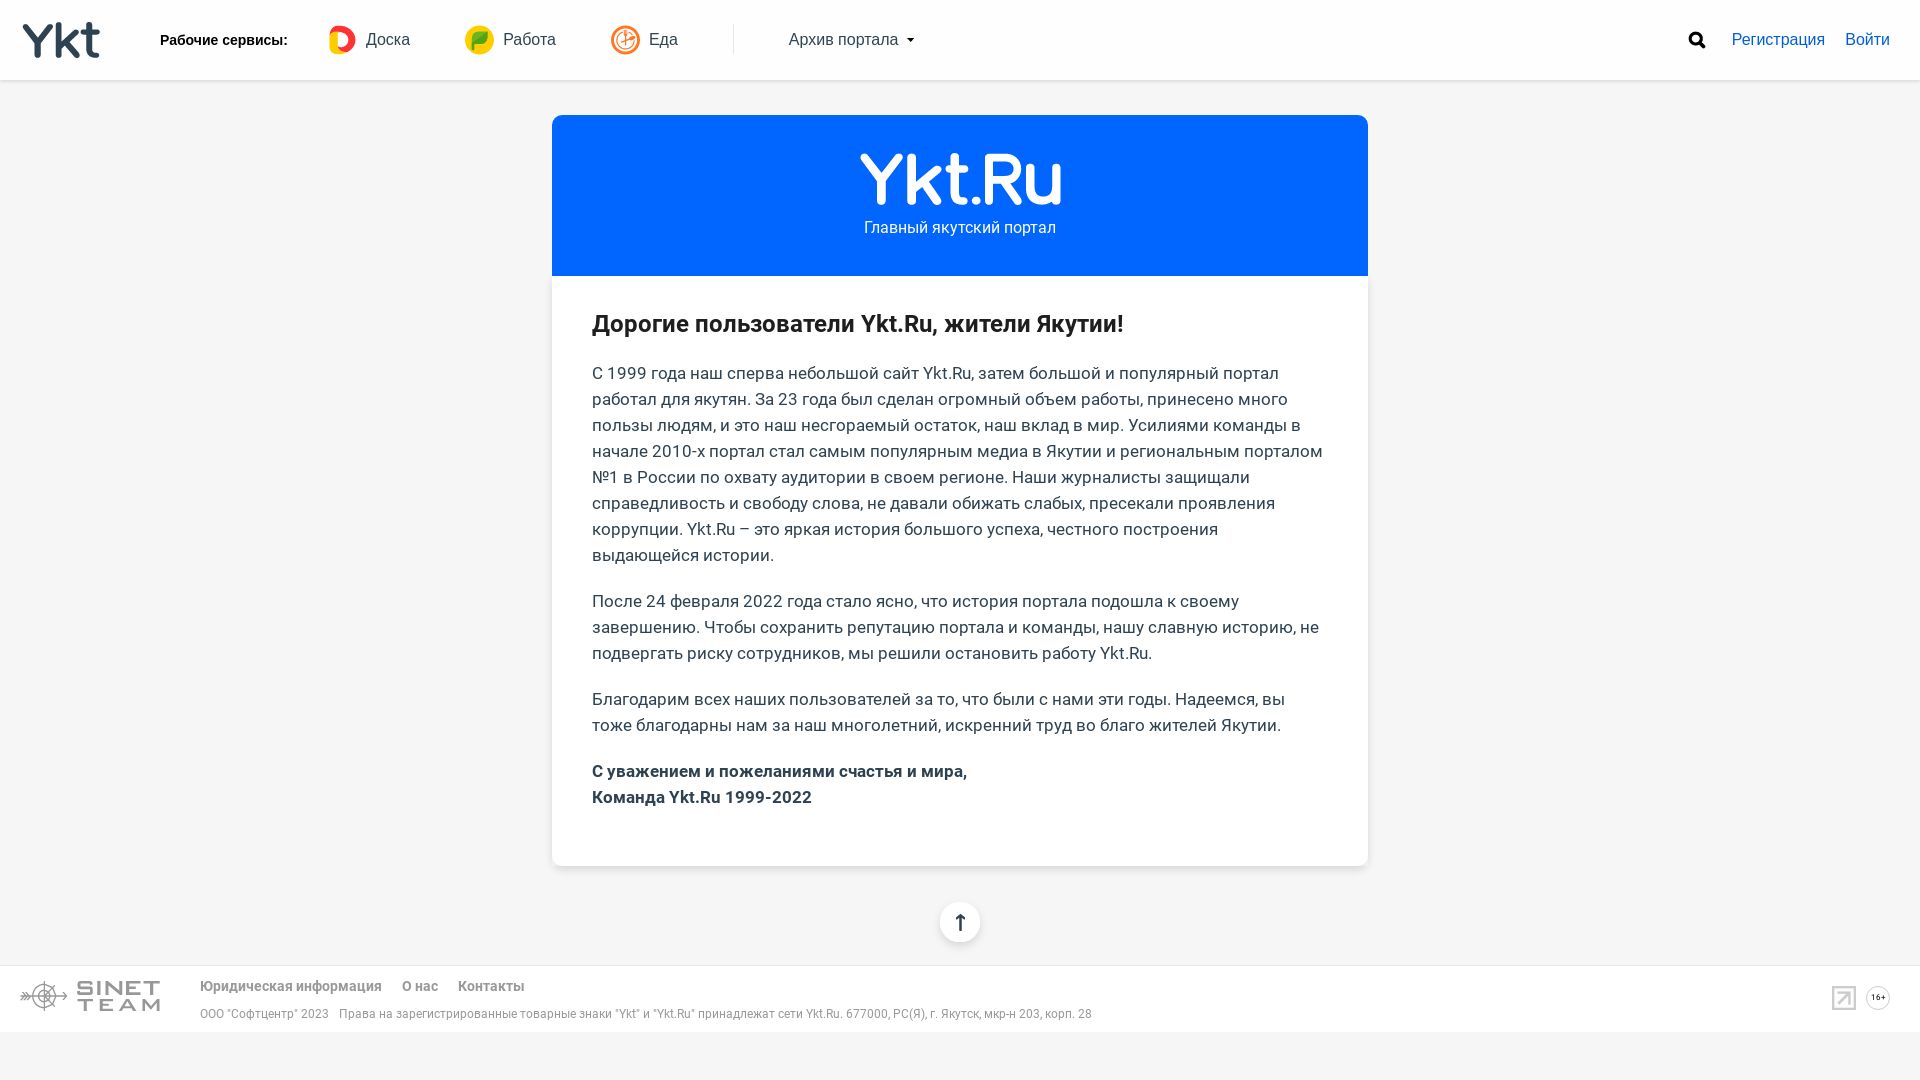 État du site web ykt.ru est   EN LIGNE